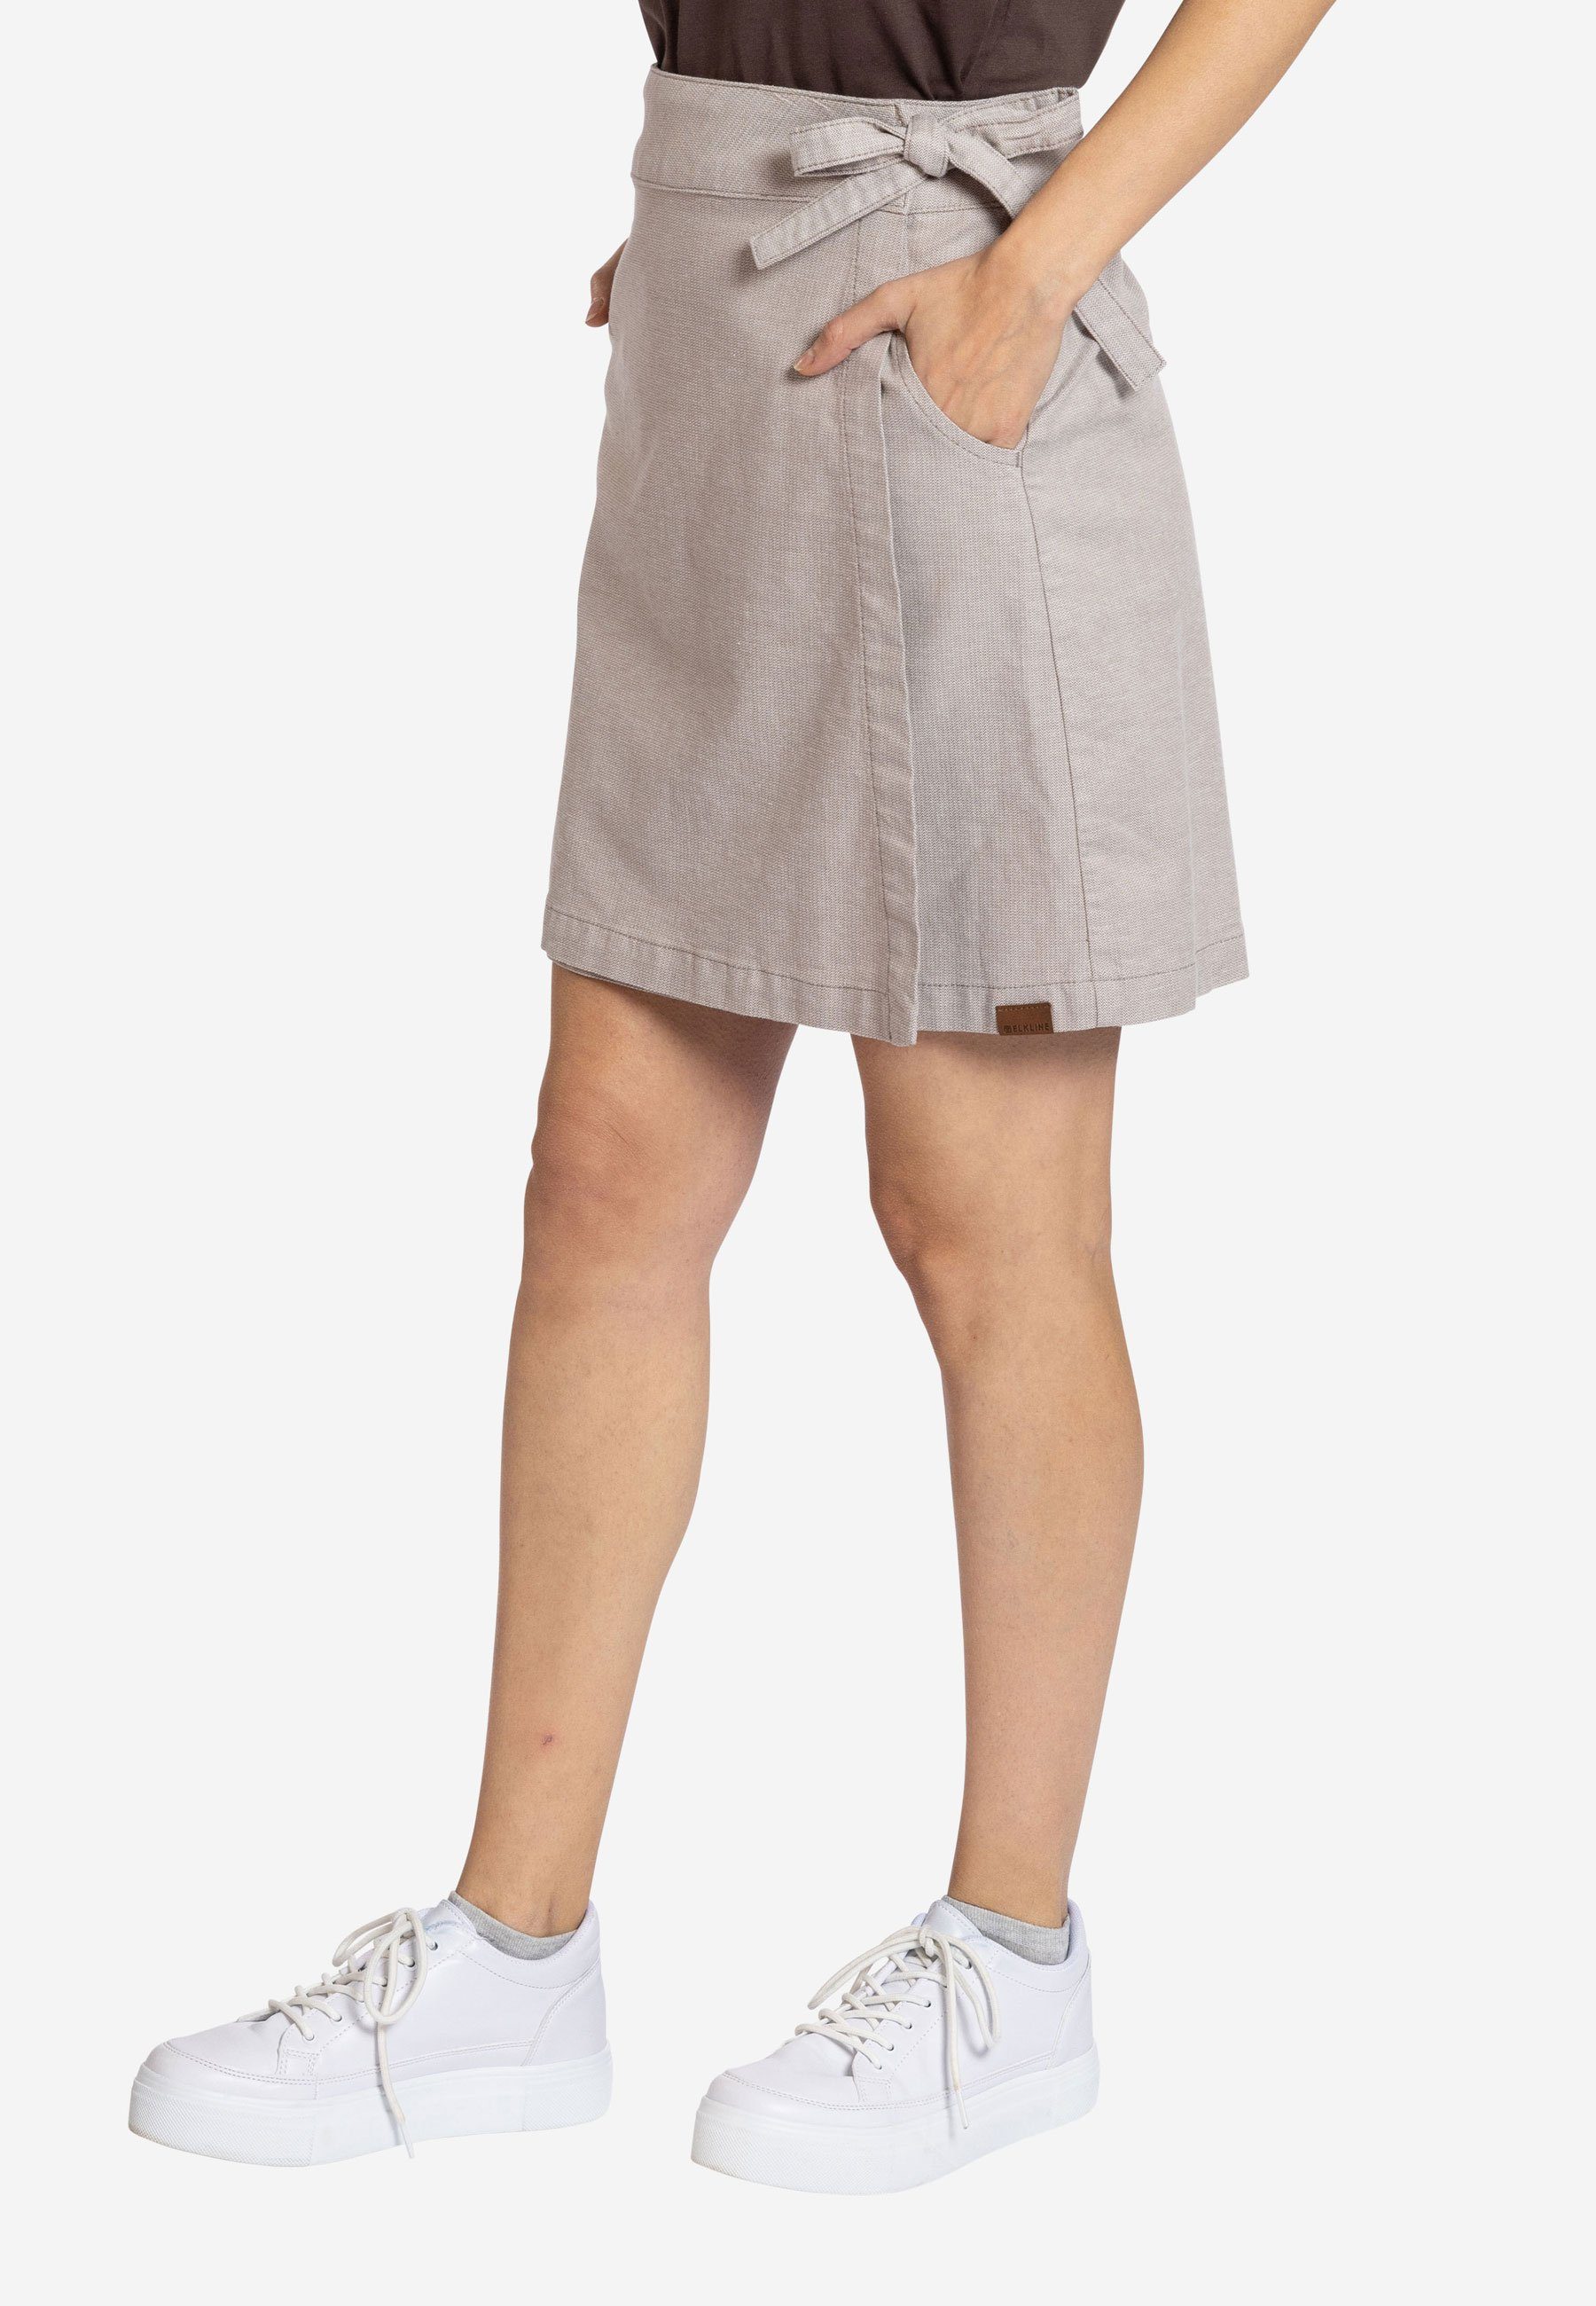 Dauerschleife mit Sommerrock Taschen - Elkline khaki white kurzer Rock